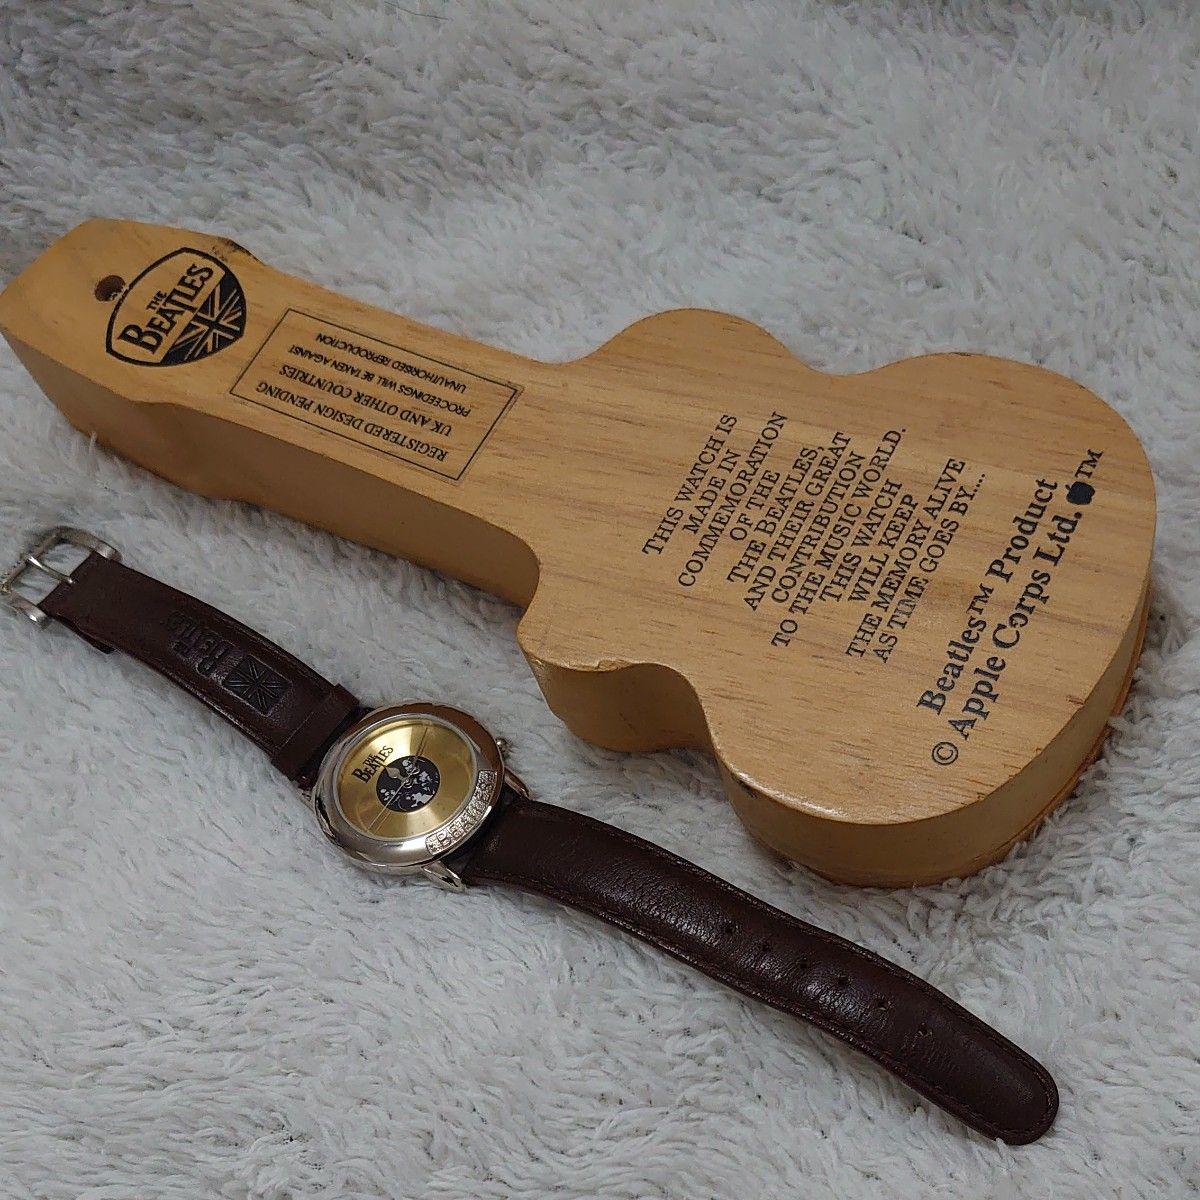 THE BEATLES ビートルズ 腕時計 木製ギターケース付き クォーツ 稼働 